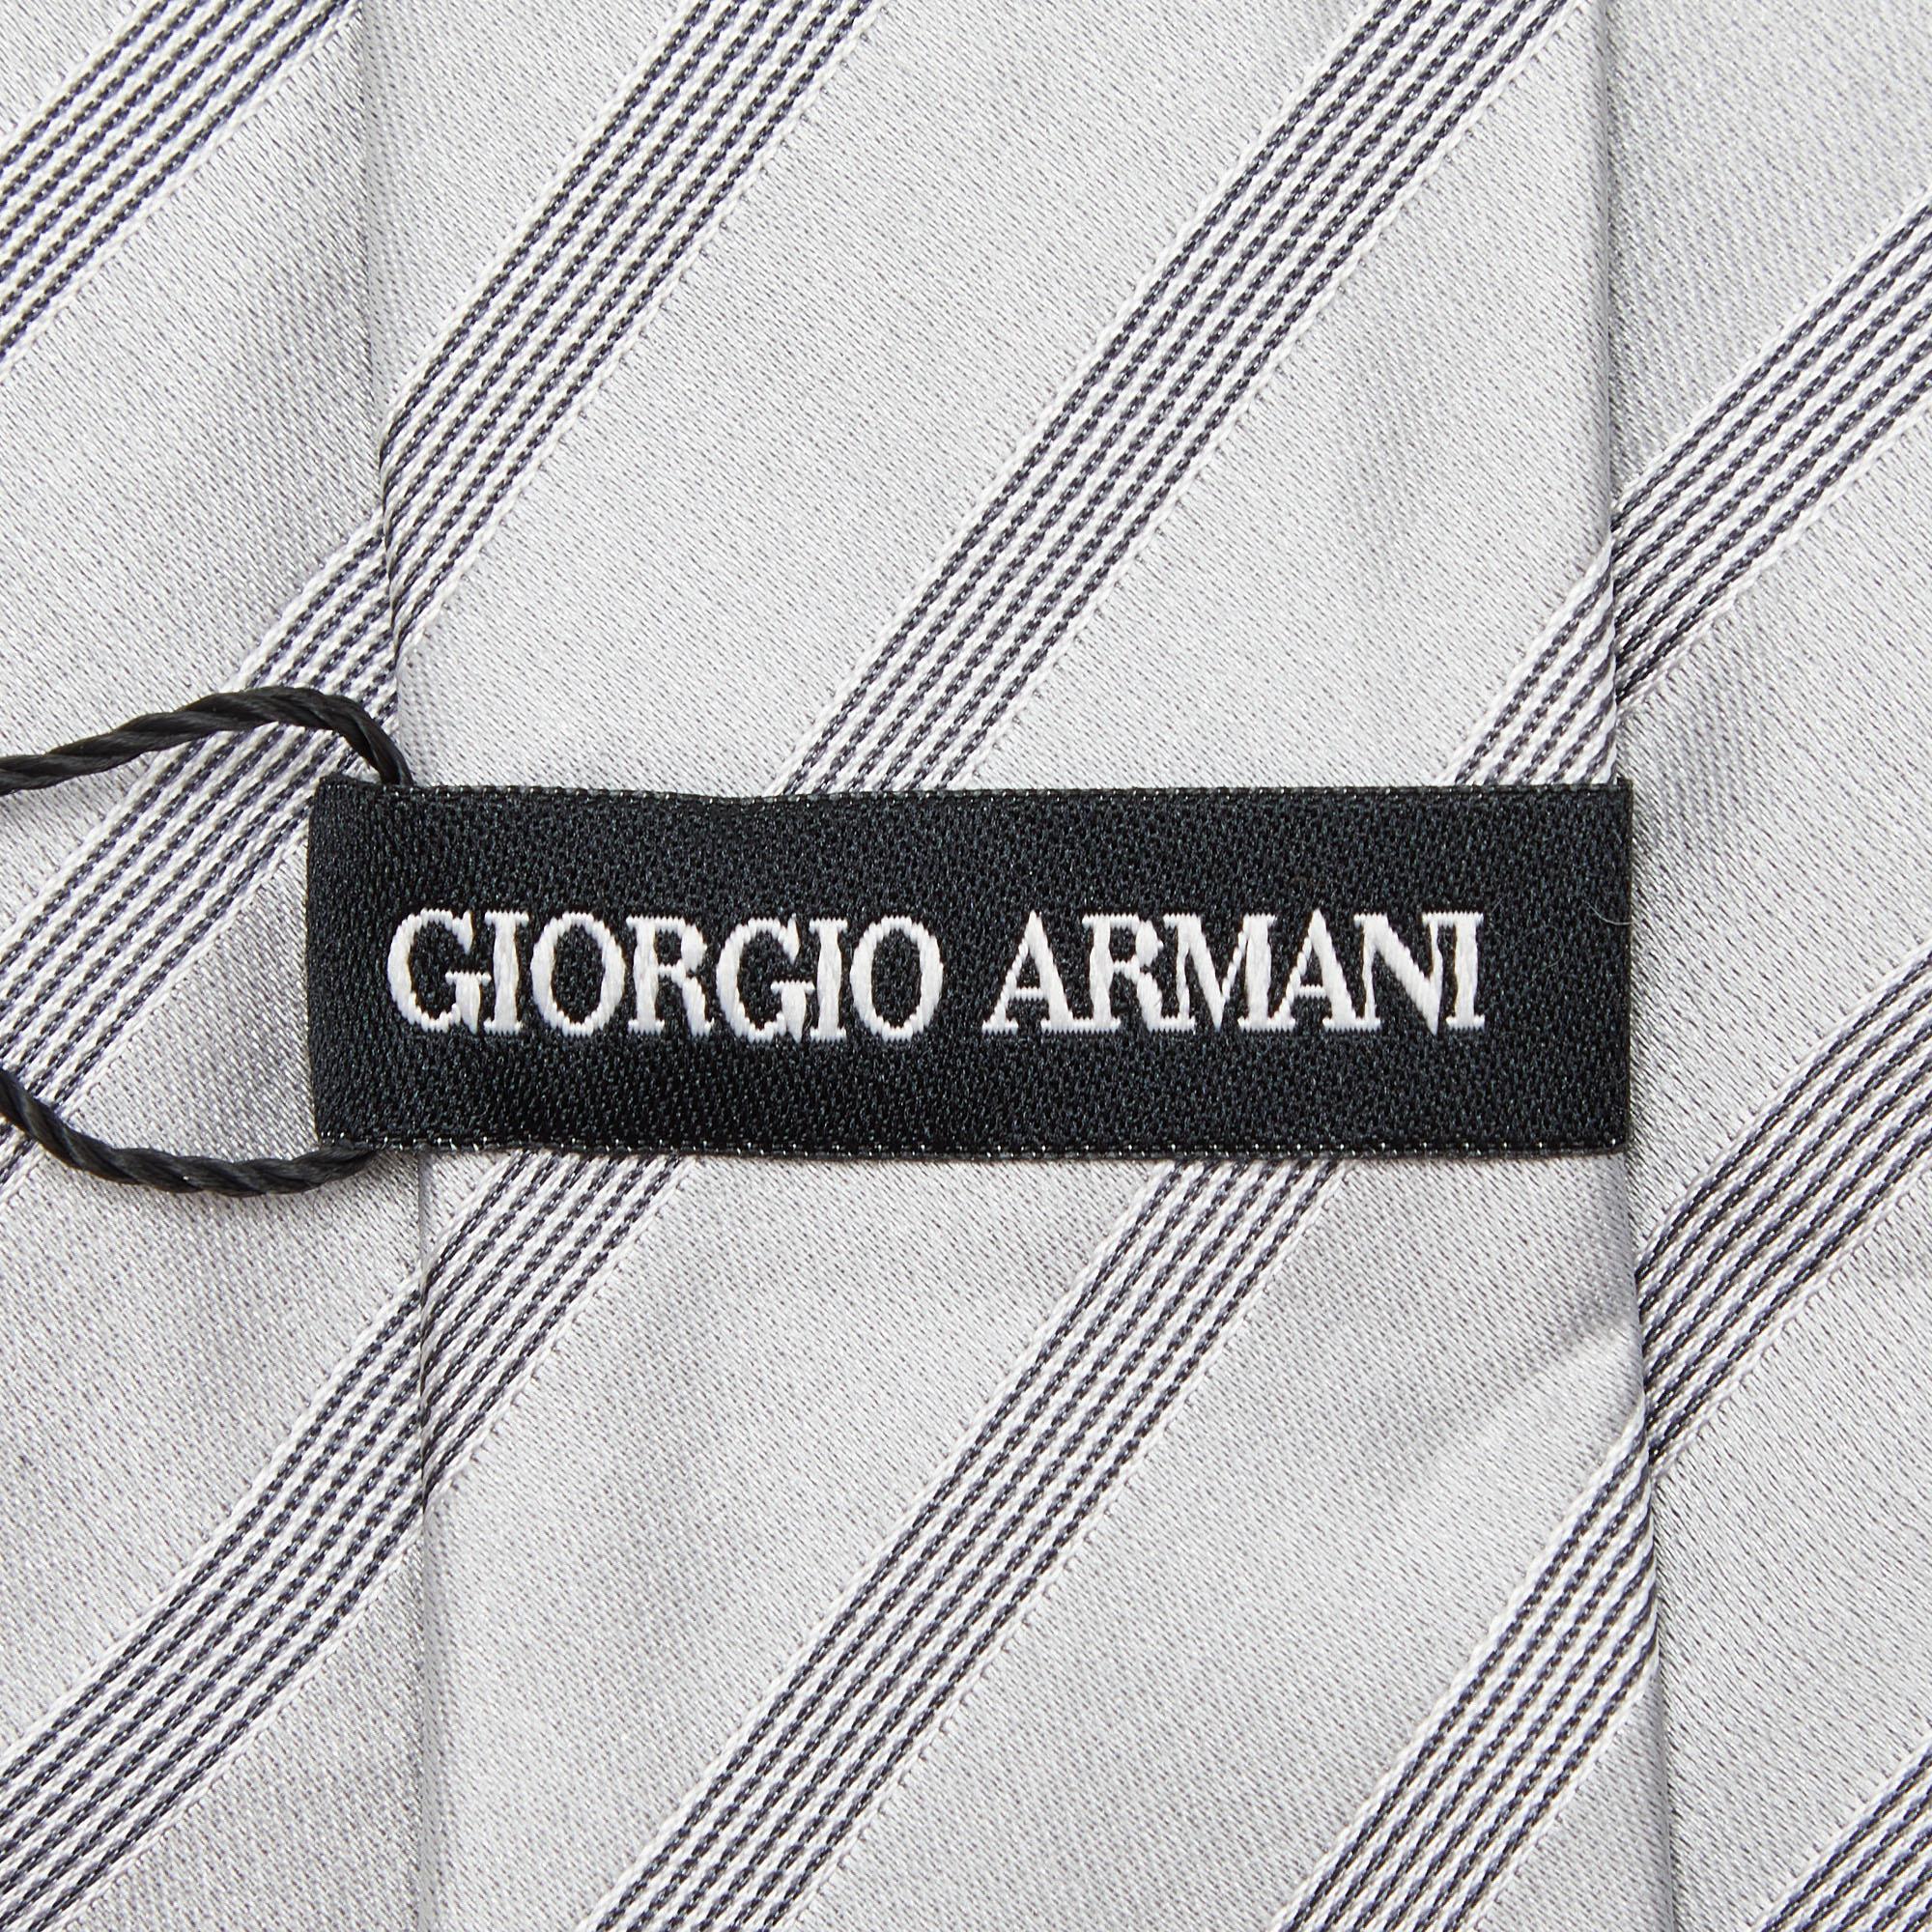 Giorgio Armani Grey Diagonal Striped Silk Tie For Sale 1